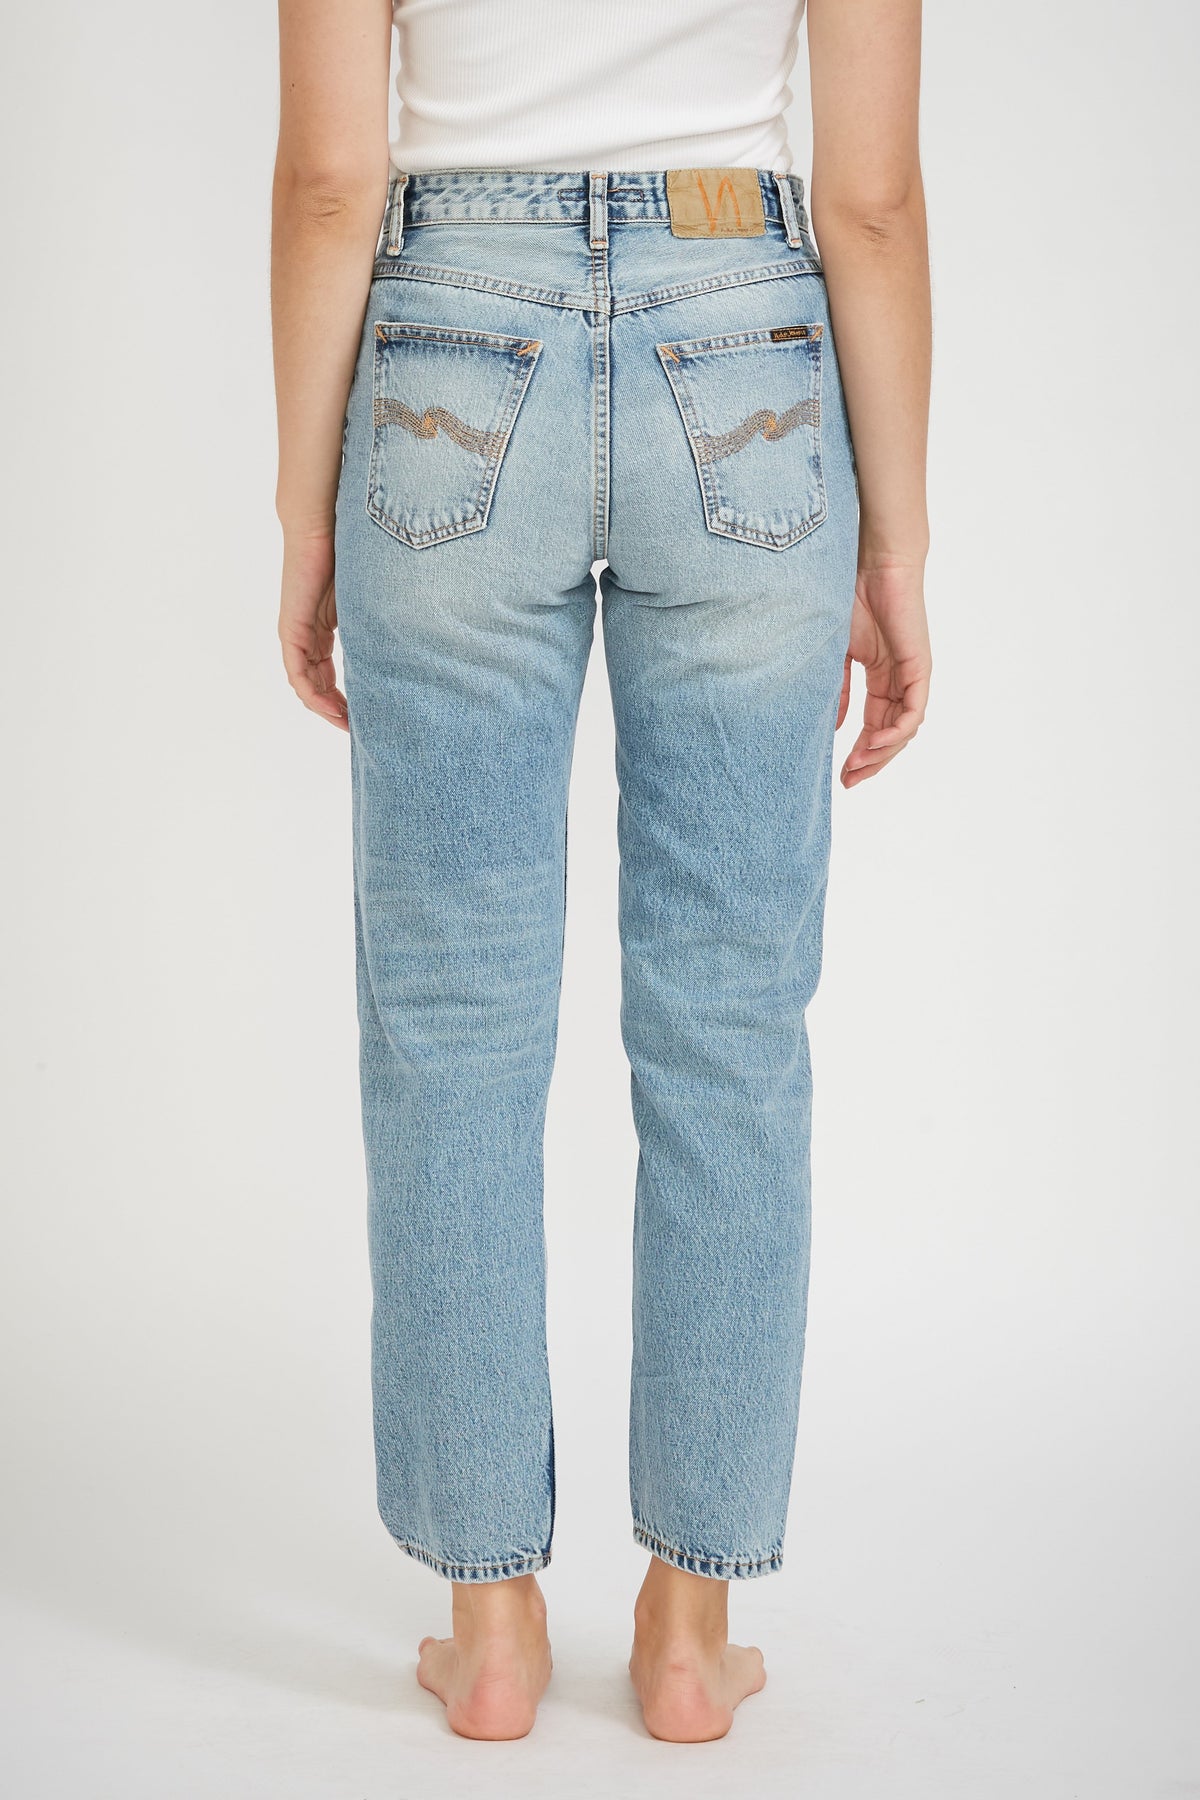 Nudie Jeans Australia | Buy Nudie Jeans Clothing, Jacket, Wallet For ...